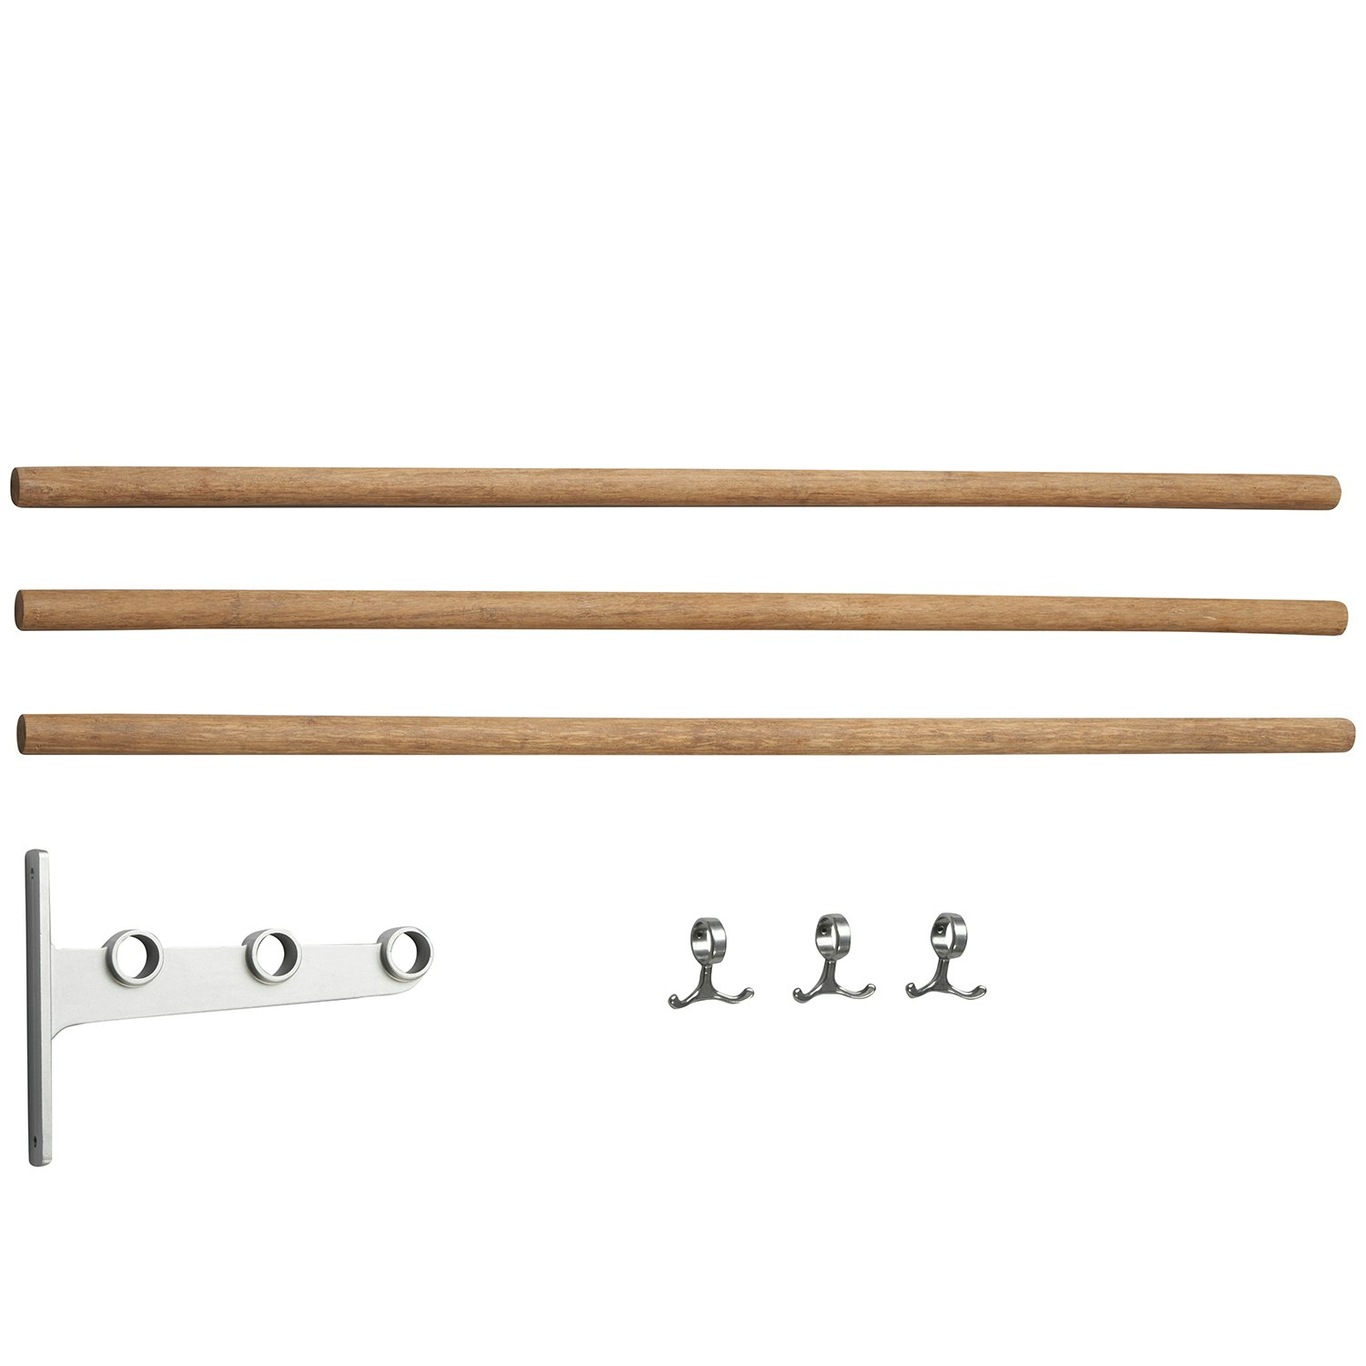 Nostalgi Extension Part For Hat Rack/ Shoe Rack, Aluminium Verlengstuk Voor Een Hoedenrek / Schoenenrek, Aluminium Aluminium Bamboo